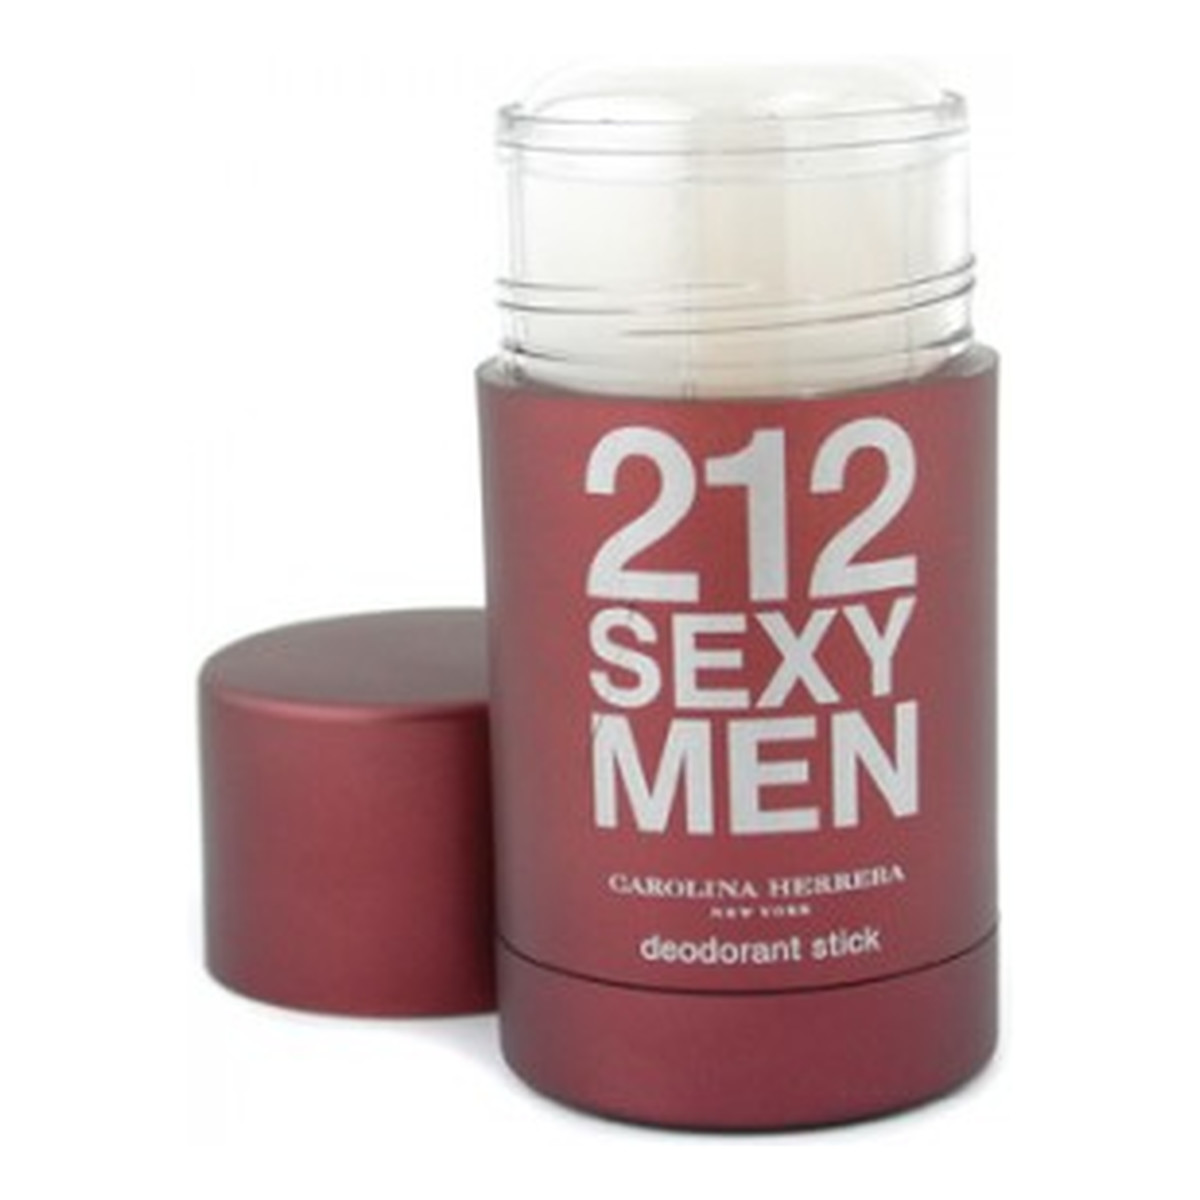 Carolina Herrera 212 Sexy Men Dezodorant Sztyft 75ml